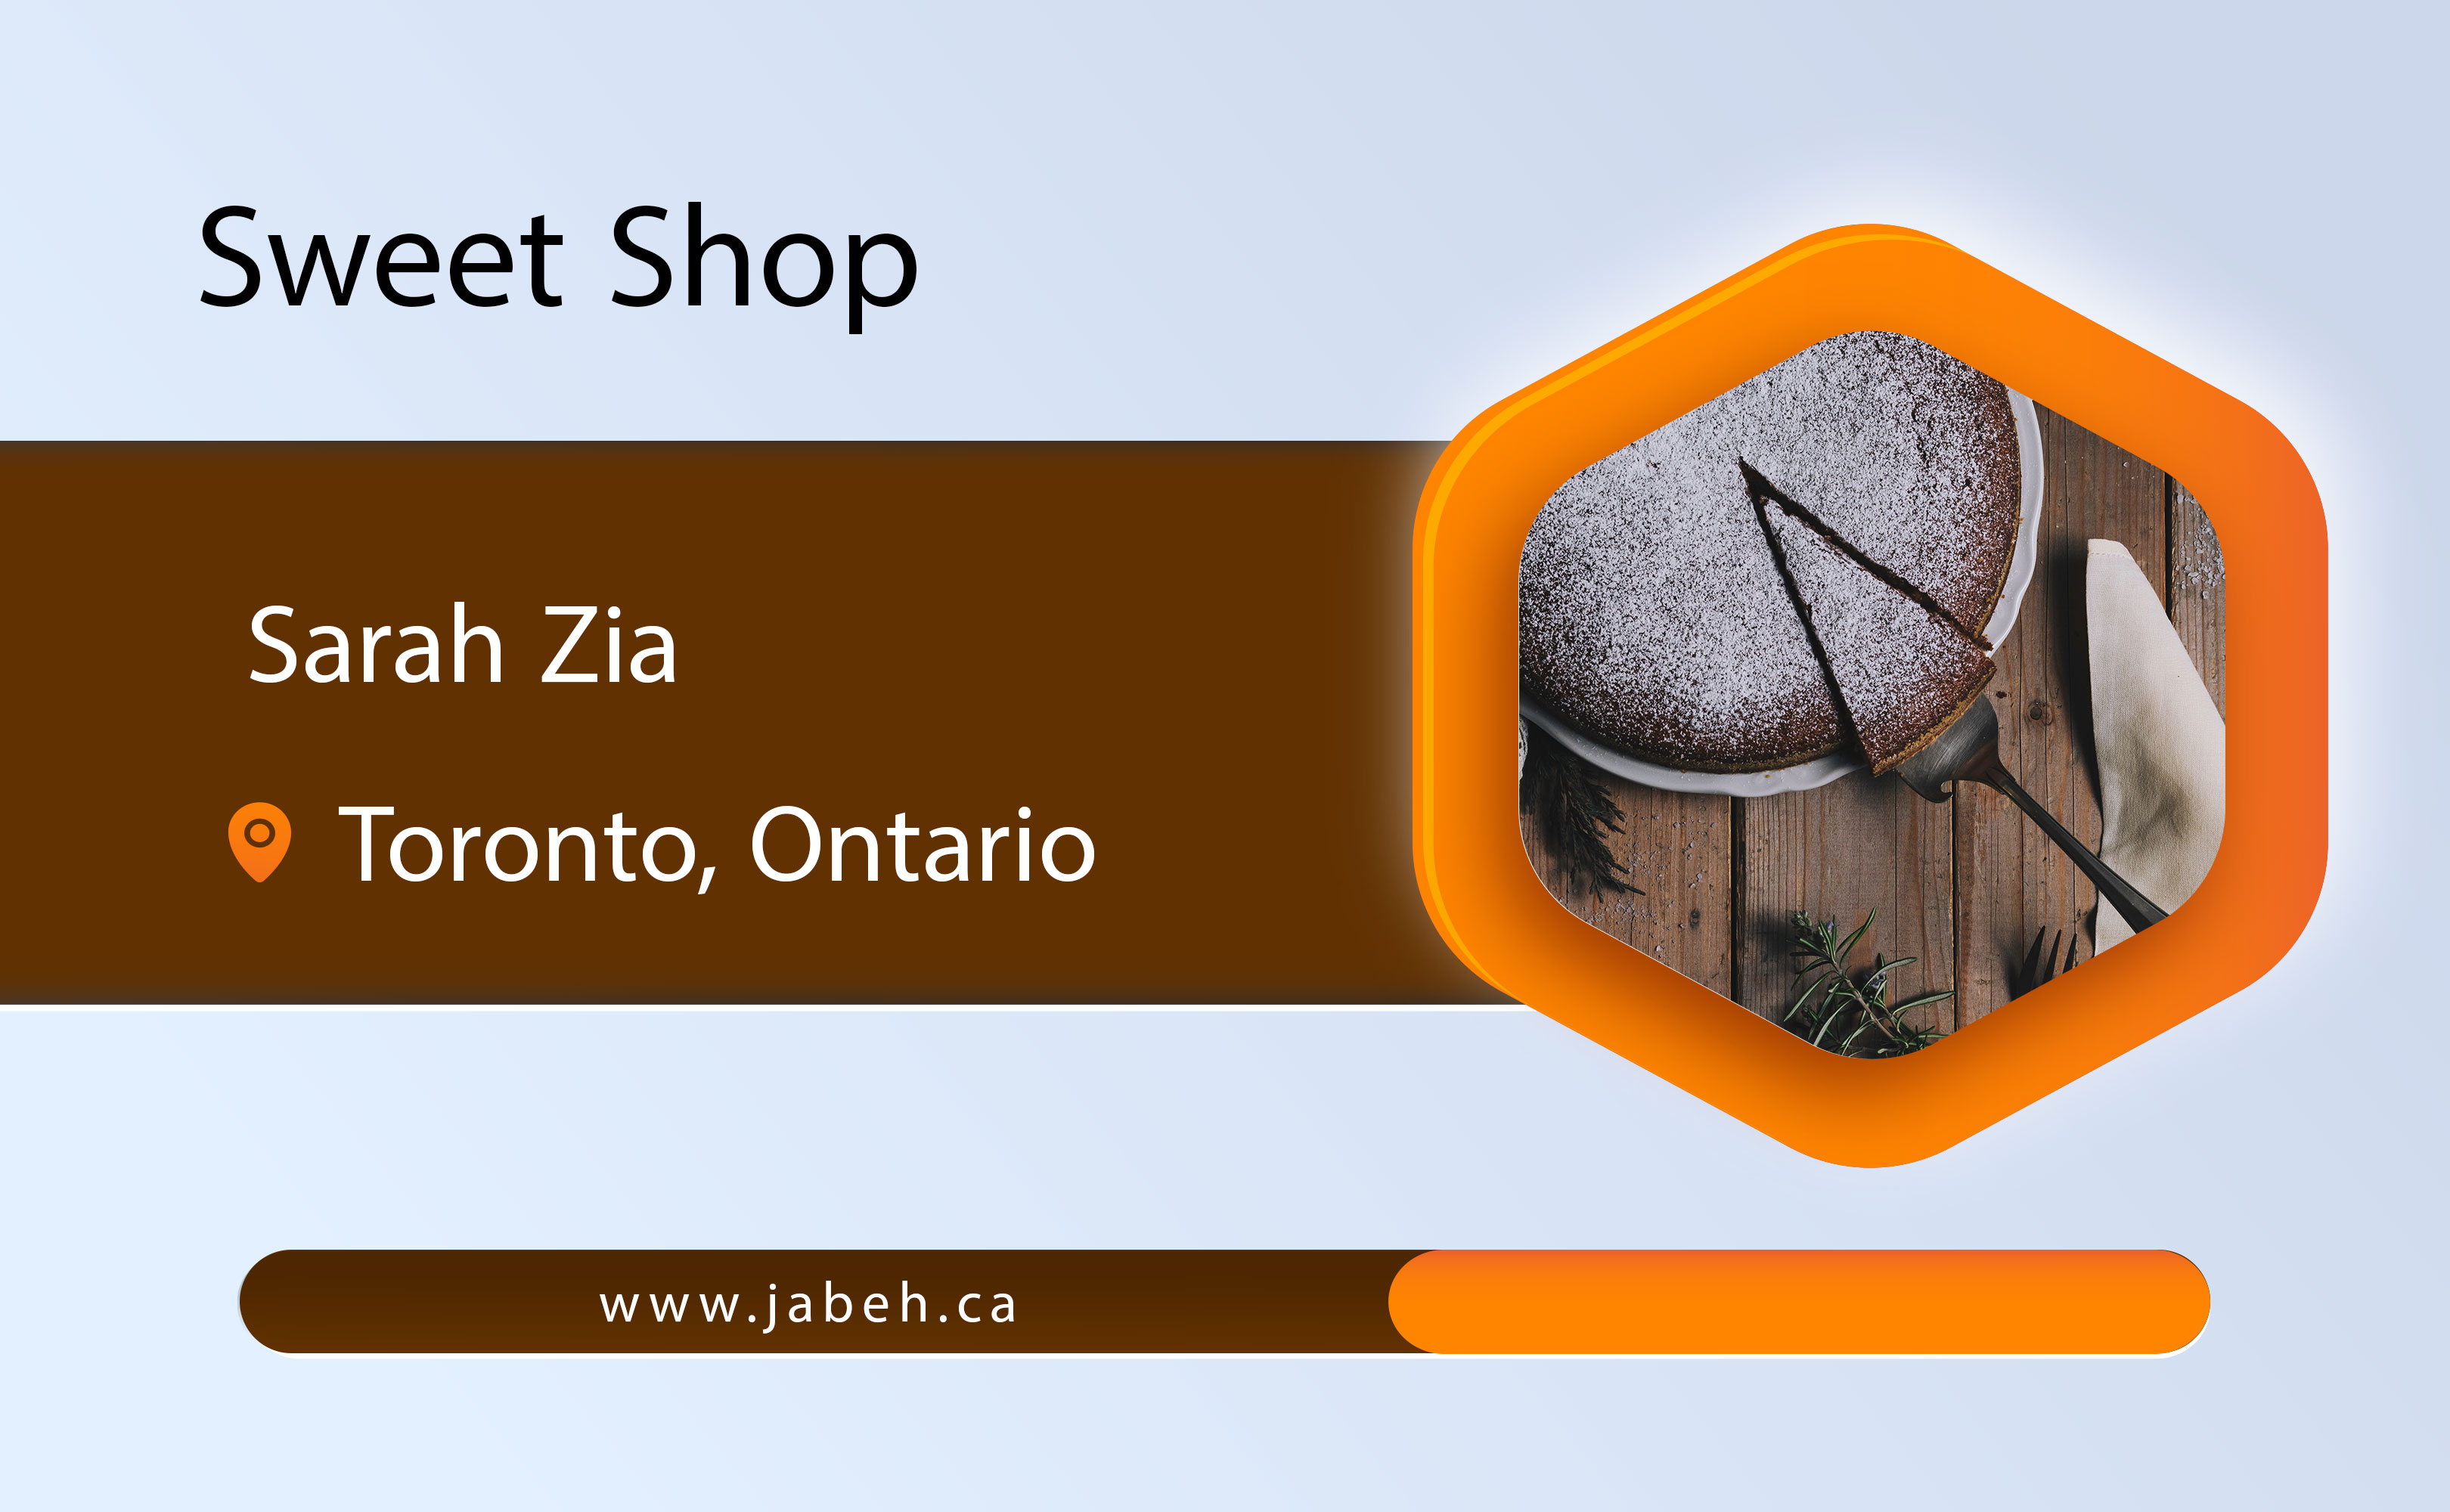 Sarah Zia's Sweet Shop in Toronto, Ontario